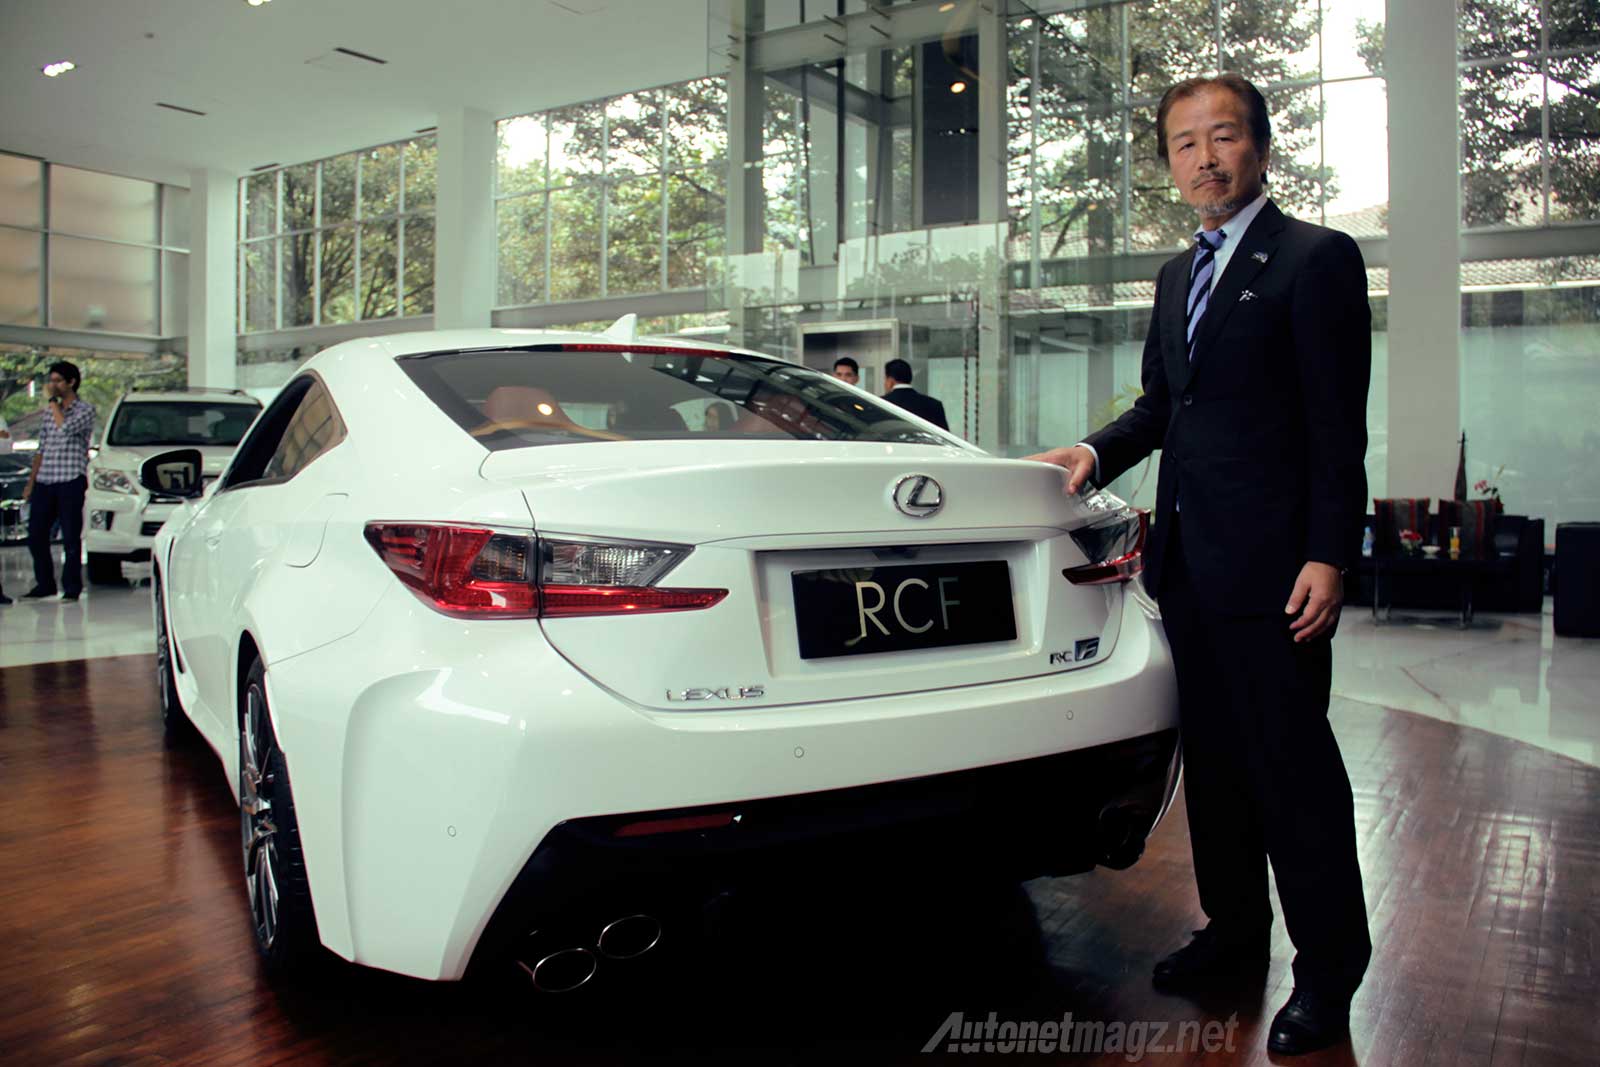 Berita, Tenaga-Lexus-RC-F-Indonesia: Lexus RC F Sudah Resmi Hadir di Indonesia, Siap Lawan BMW M4